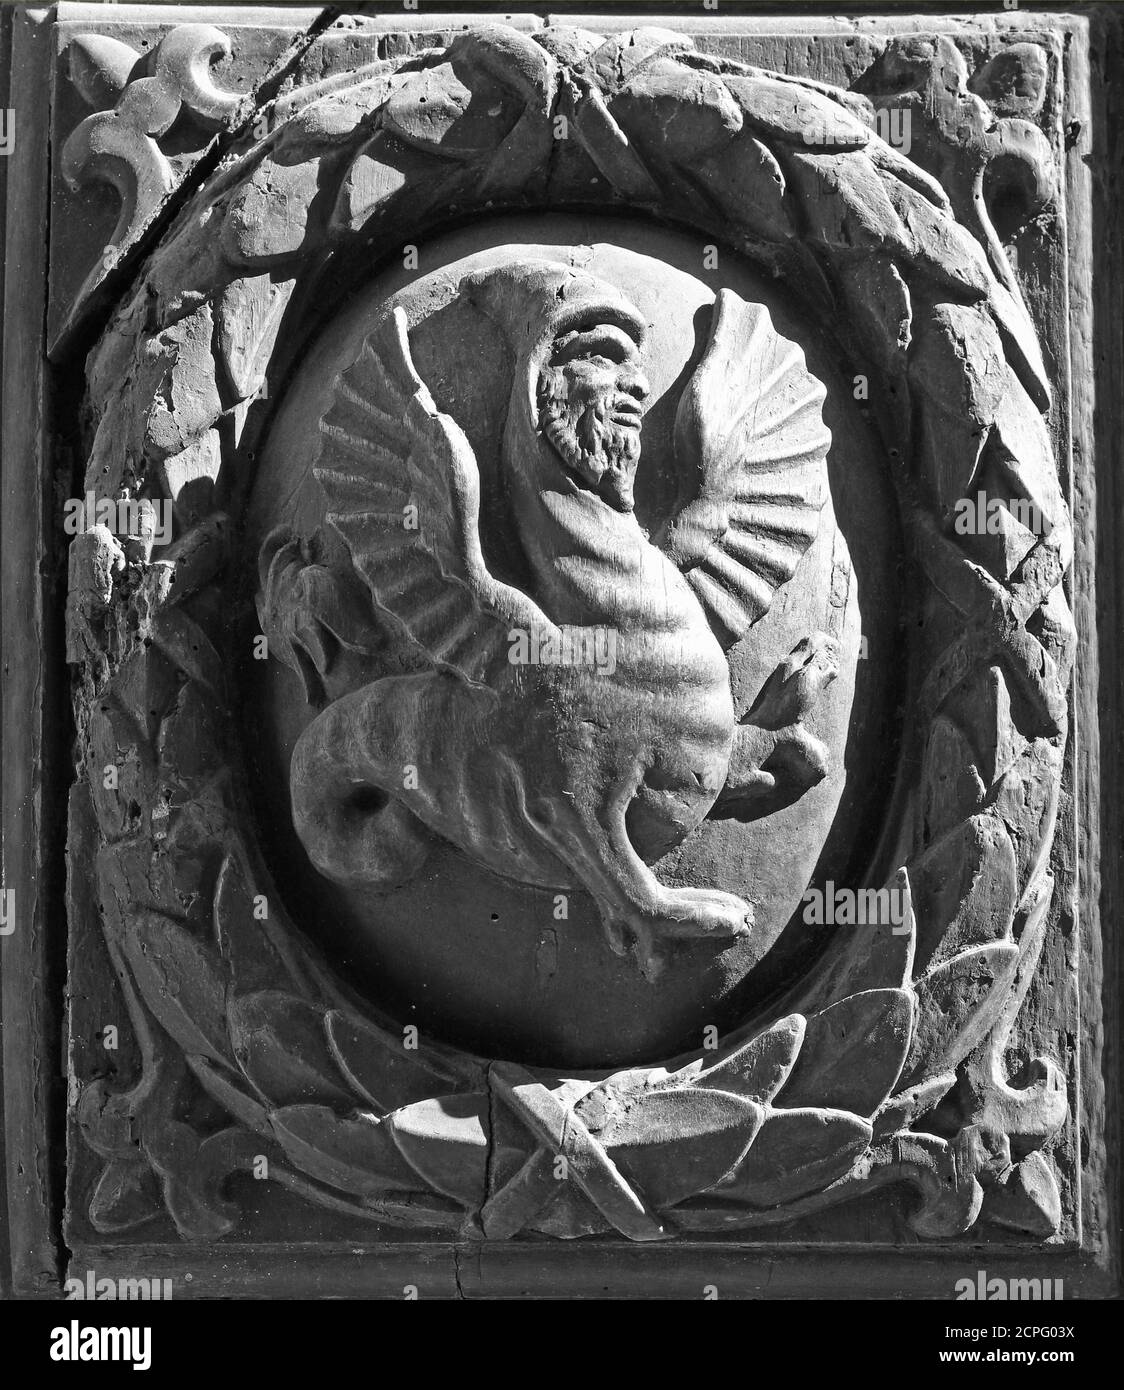 Personnage fantaisie homme-dragon sculpté dans le bois, noir et blanc Banque D'Images